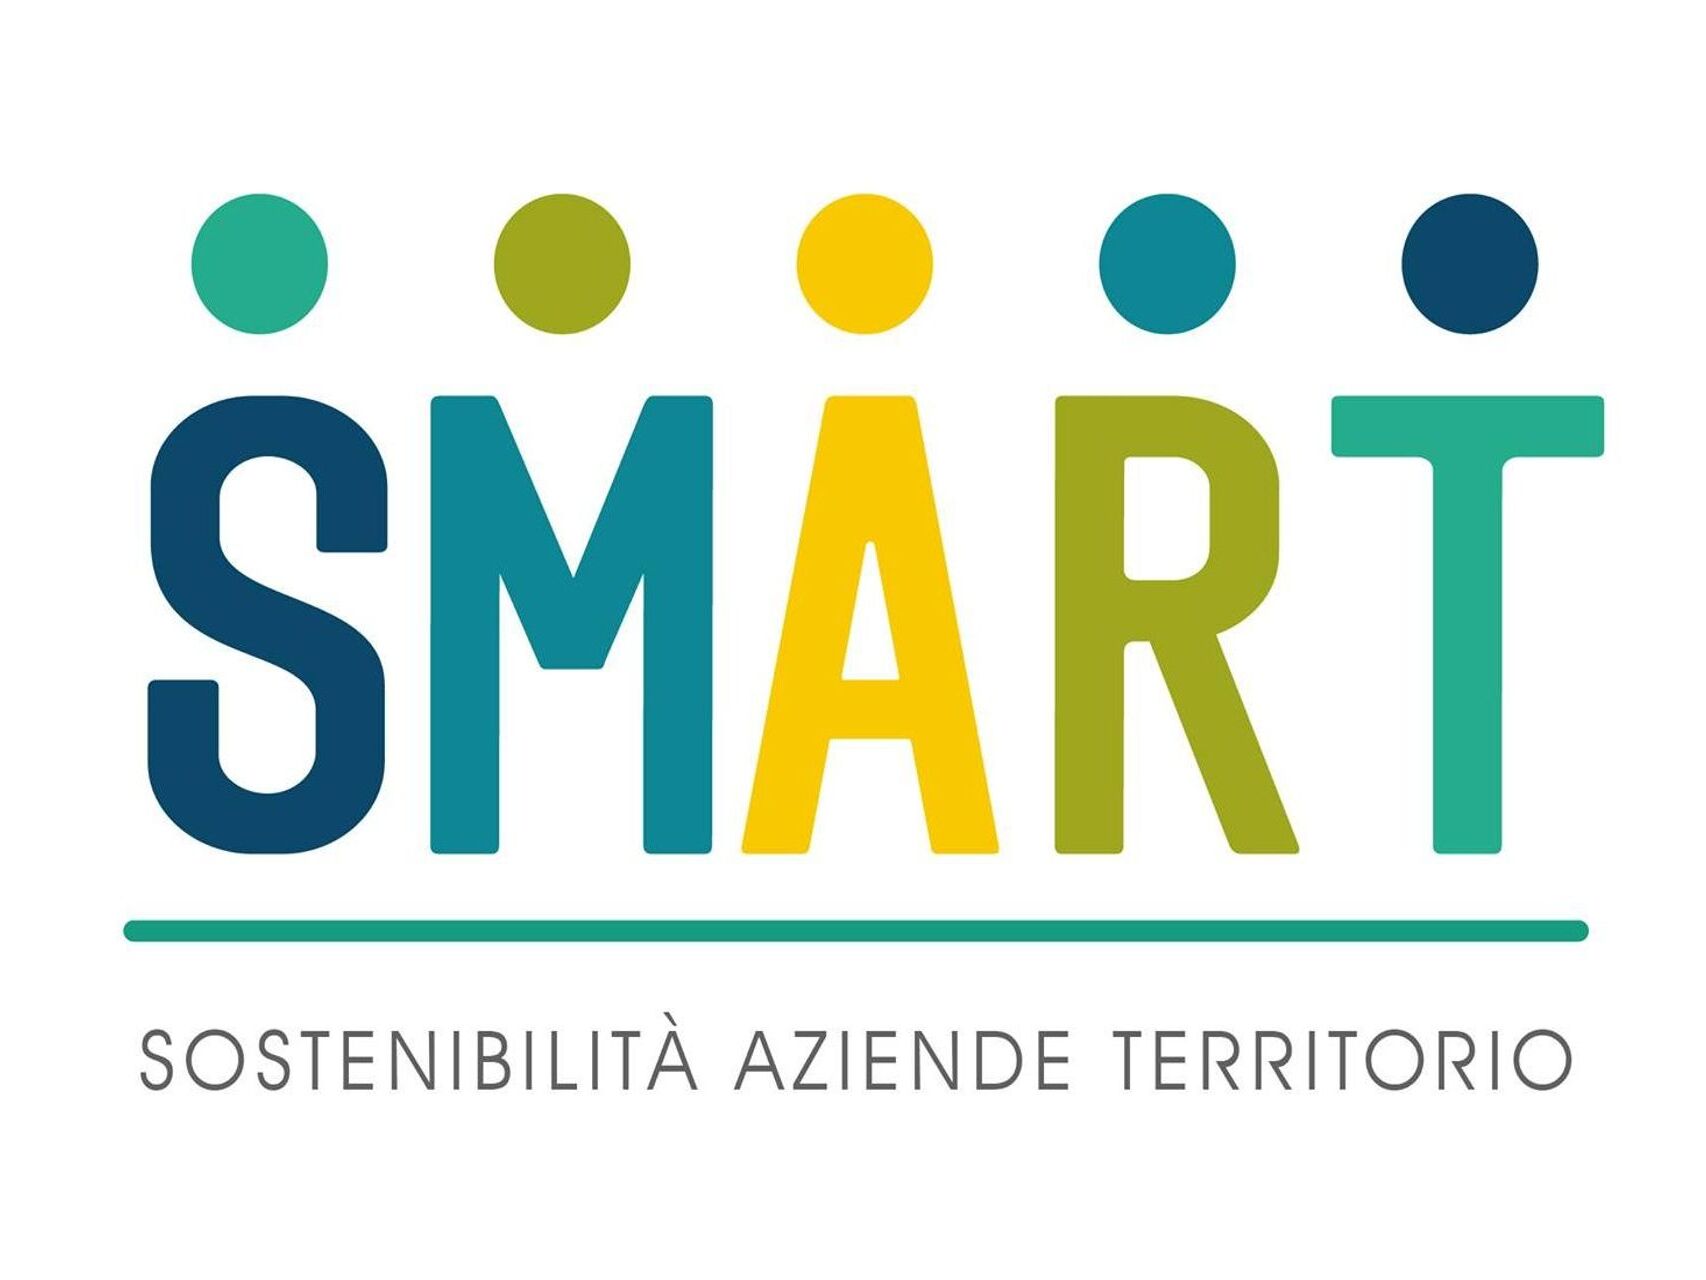 لوگوی پروژه SMART (استراتژی های پایدار و مدل های کسب و کار مسئولانه در قلمرو فرامرزی)